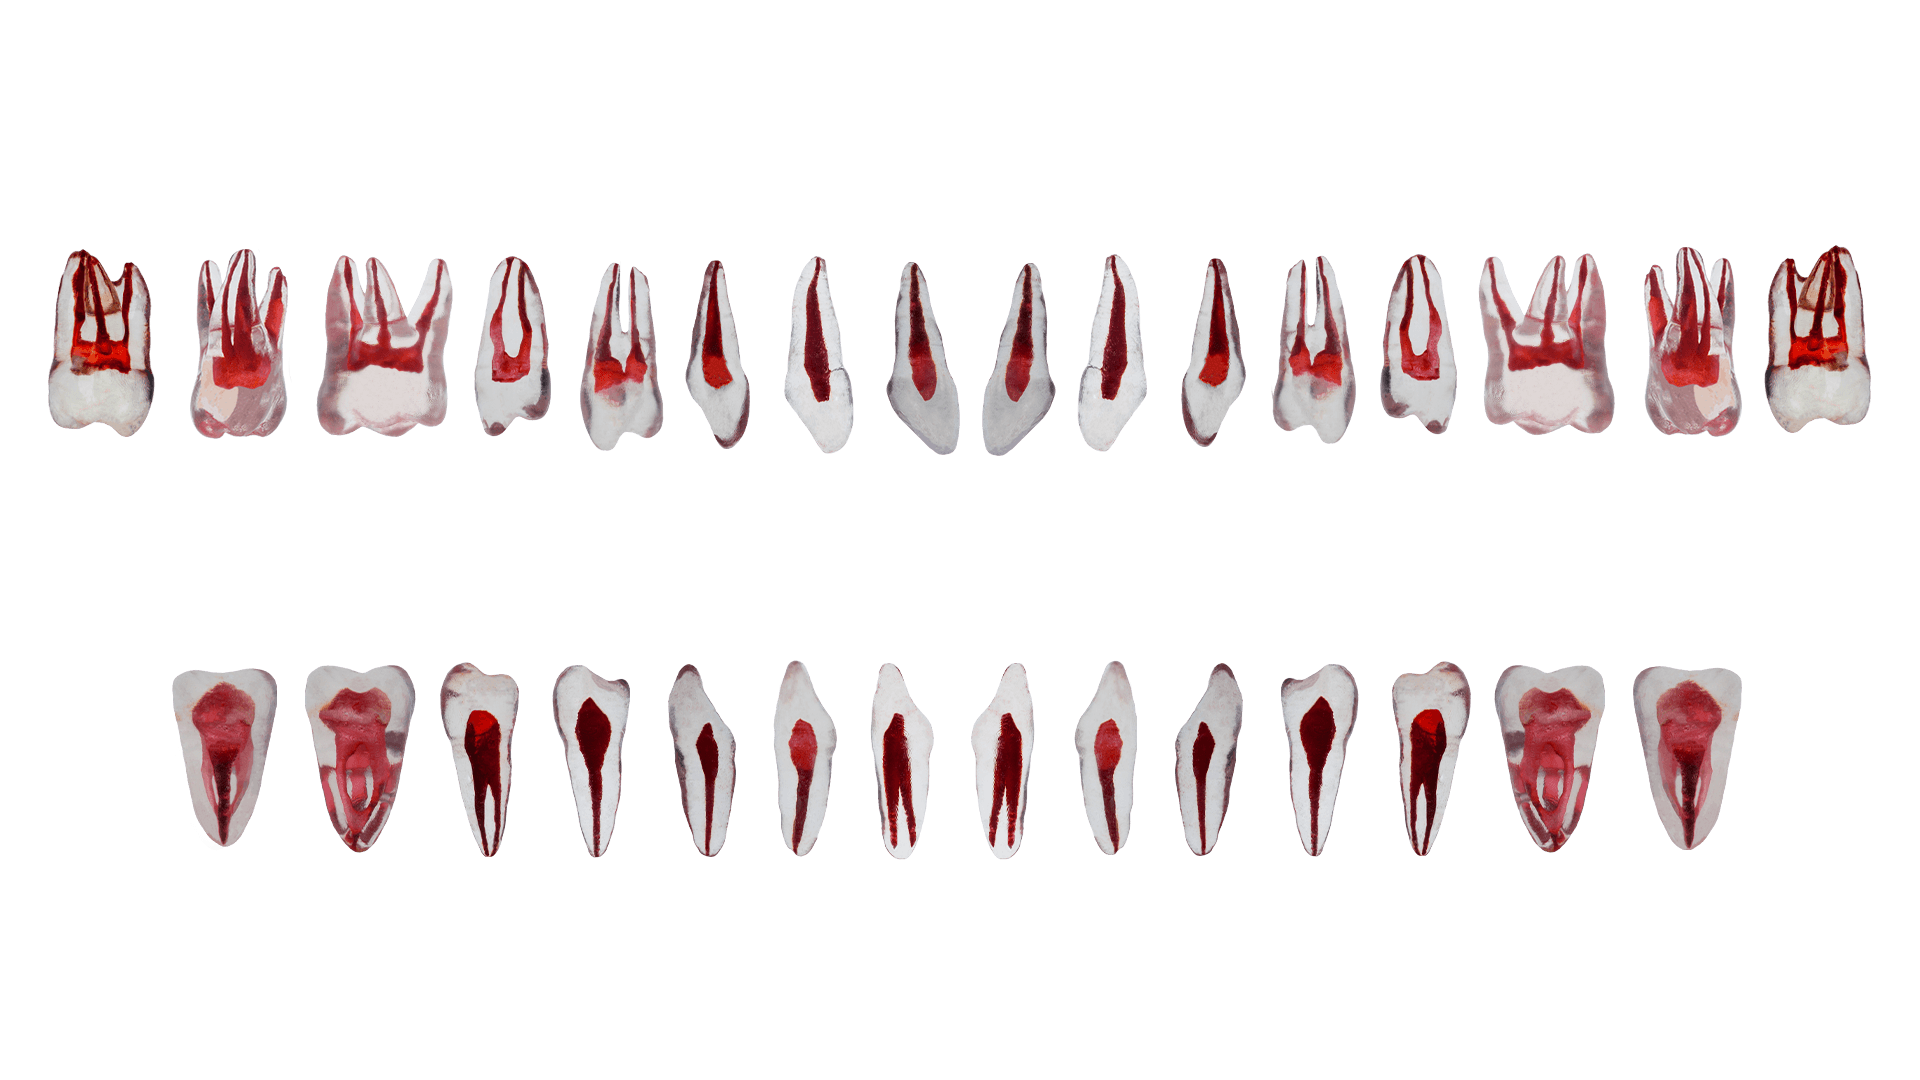 Tüm Çene Endodonti Fantom Diş Modelleri (Full Arch) - Şeffaf